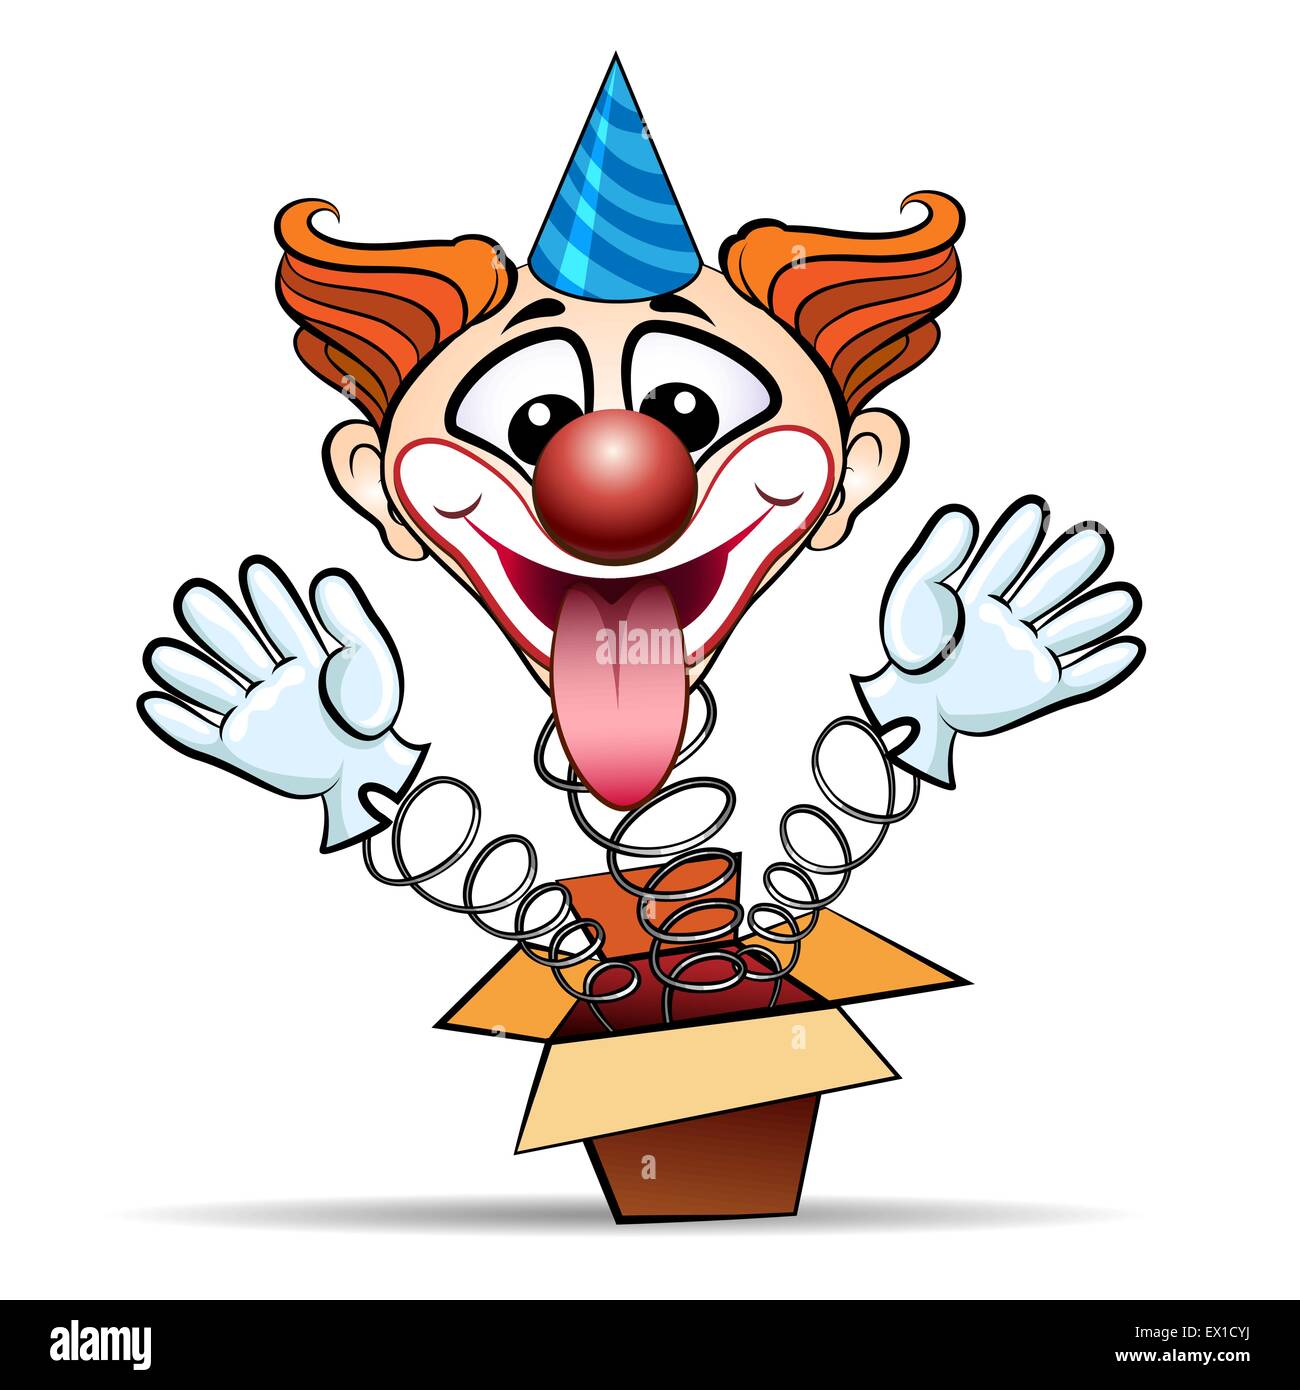 Lustige Illustration des lachenden Clown springt überrascht Auspacken. Isoliert auf weißem Hintergrund. Stock Vektor